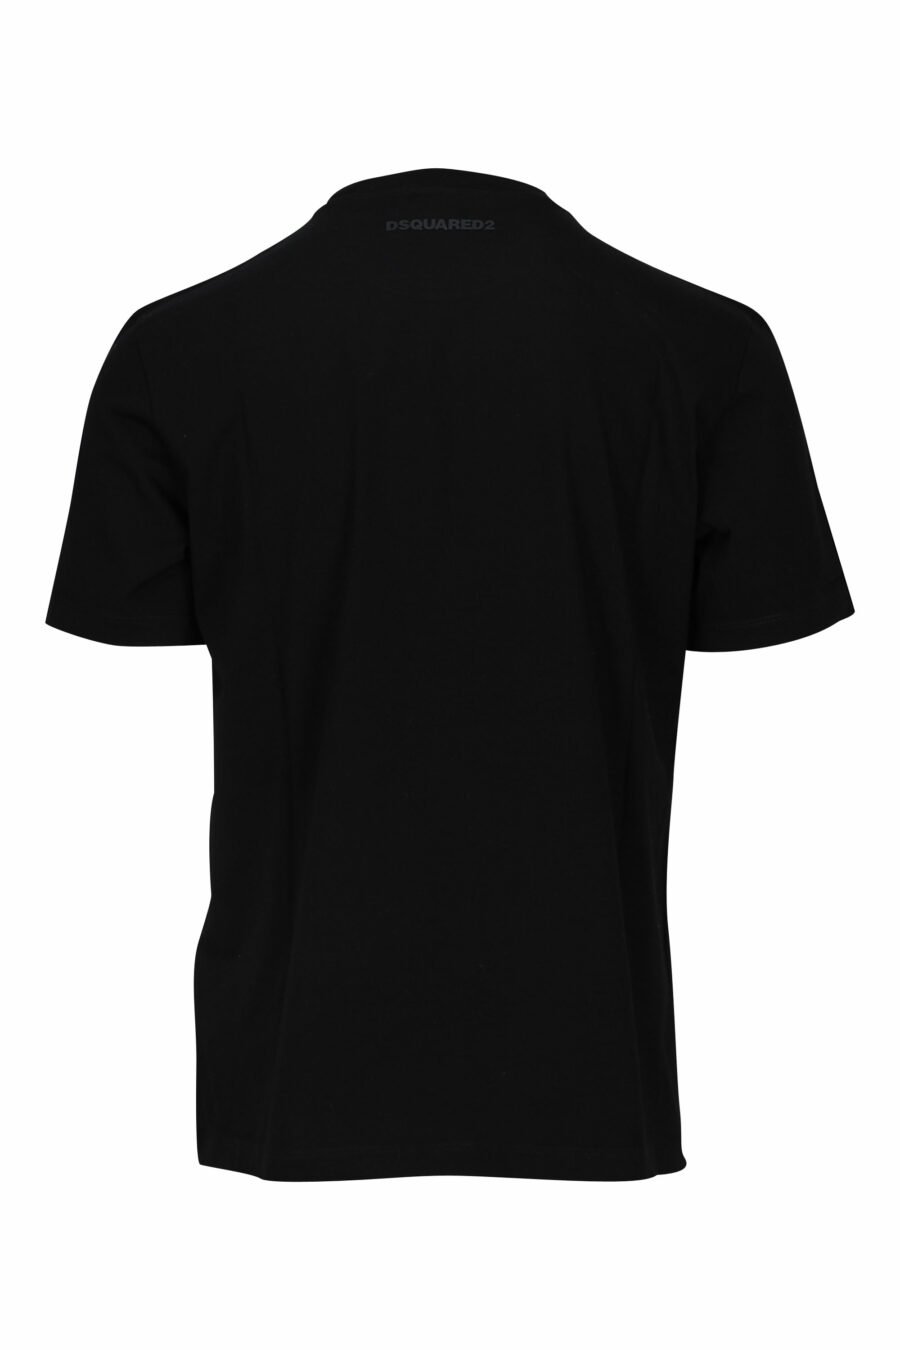 T-shirt preta com logótipo "icon" axadrezado branco - 8052134981399 1